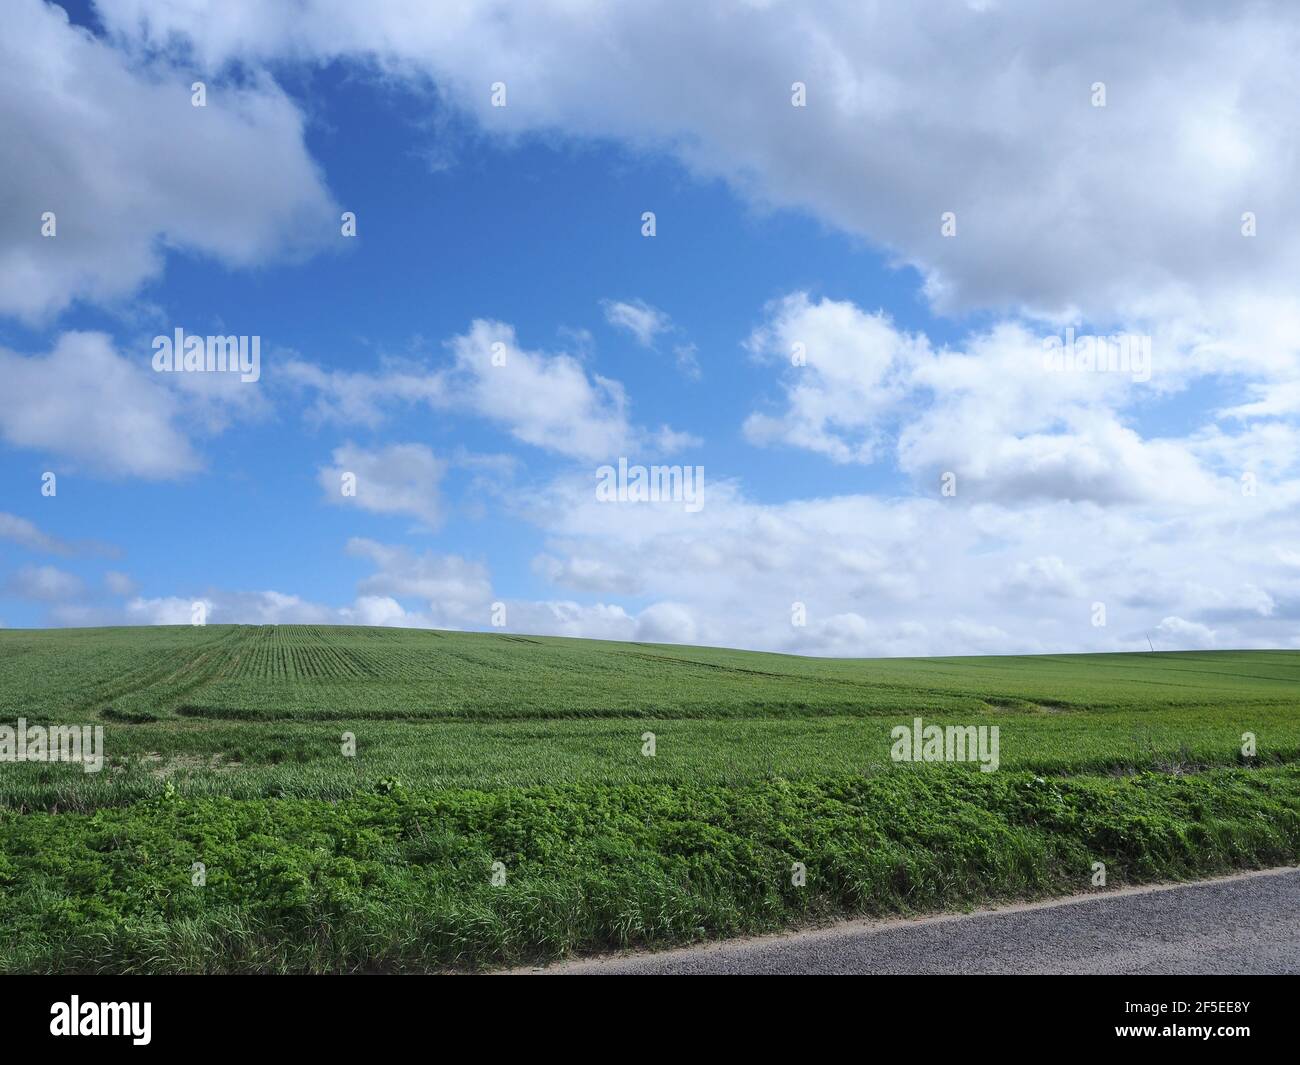 Windows xp bureau Banque de photographies et d'images à haute résolution -  Alamy